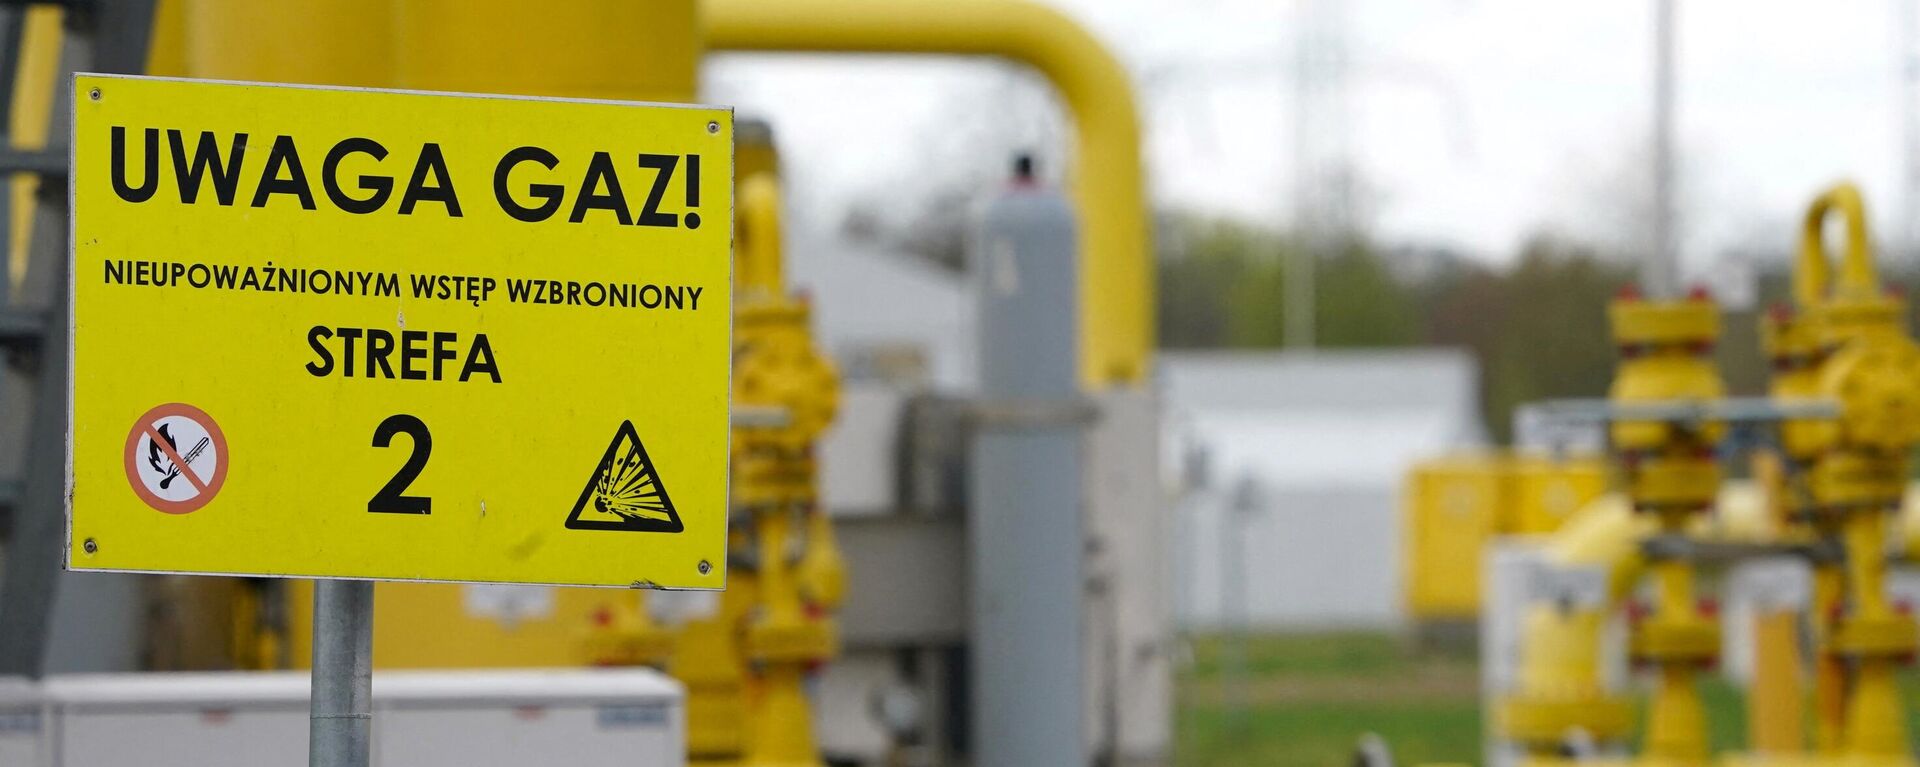 A inscrição em uma placa diz 'Uwaga gaz' (gás de atenção) no ponto de transmissão de gás em Rembelszczyzna, perto de Varsóvia, em 27 de abril de 2022. - Sputnik Brasil, 1920, 16.05.2022